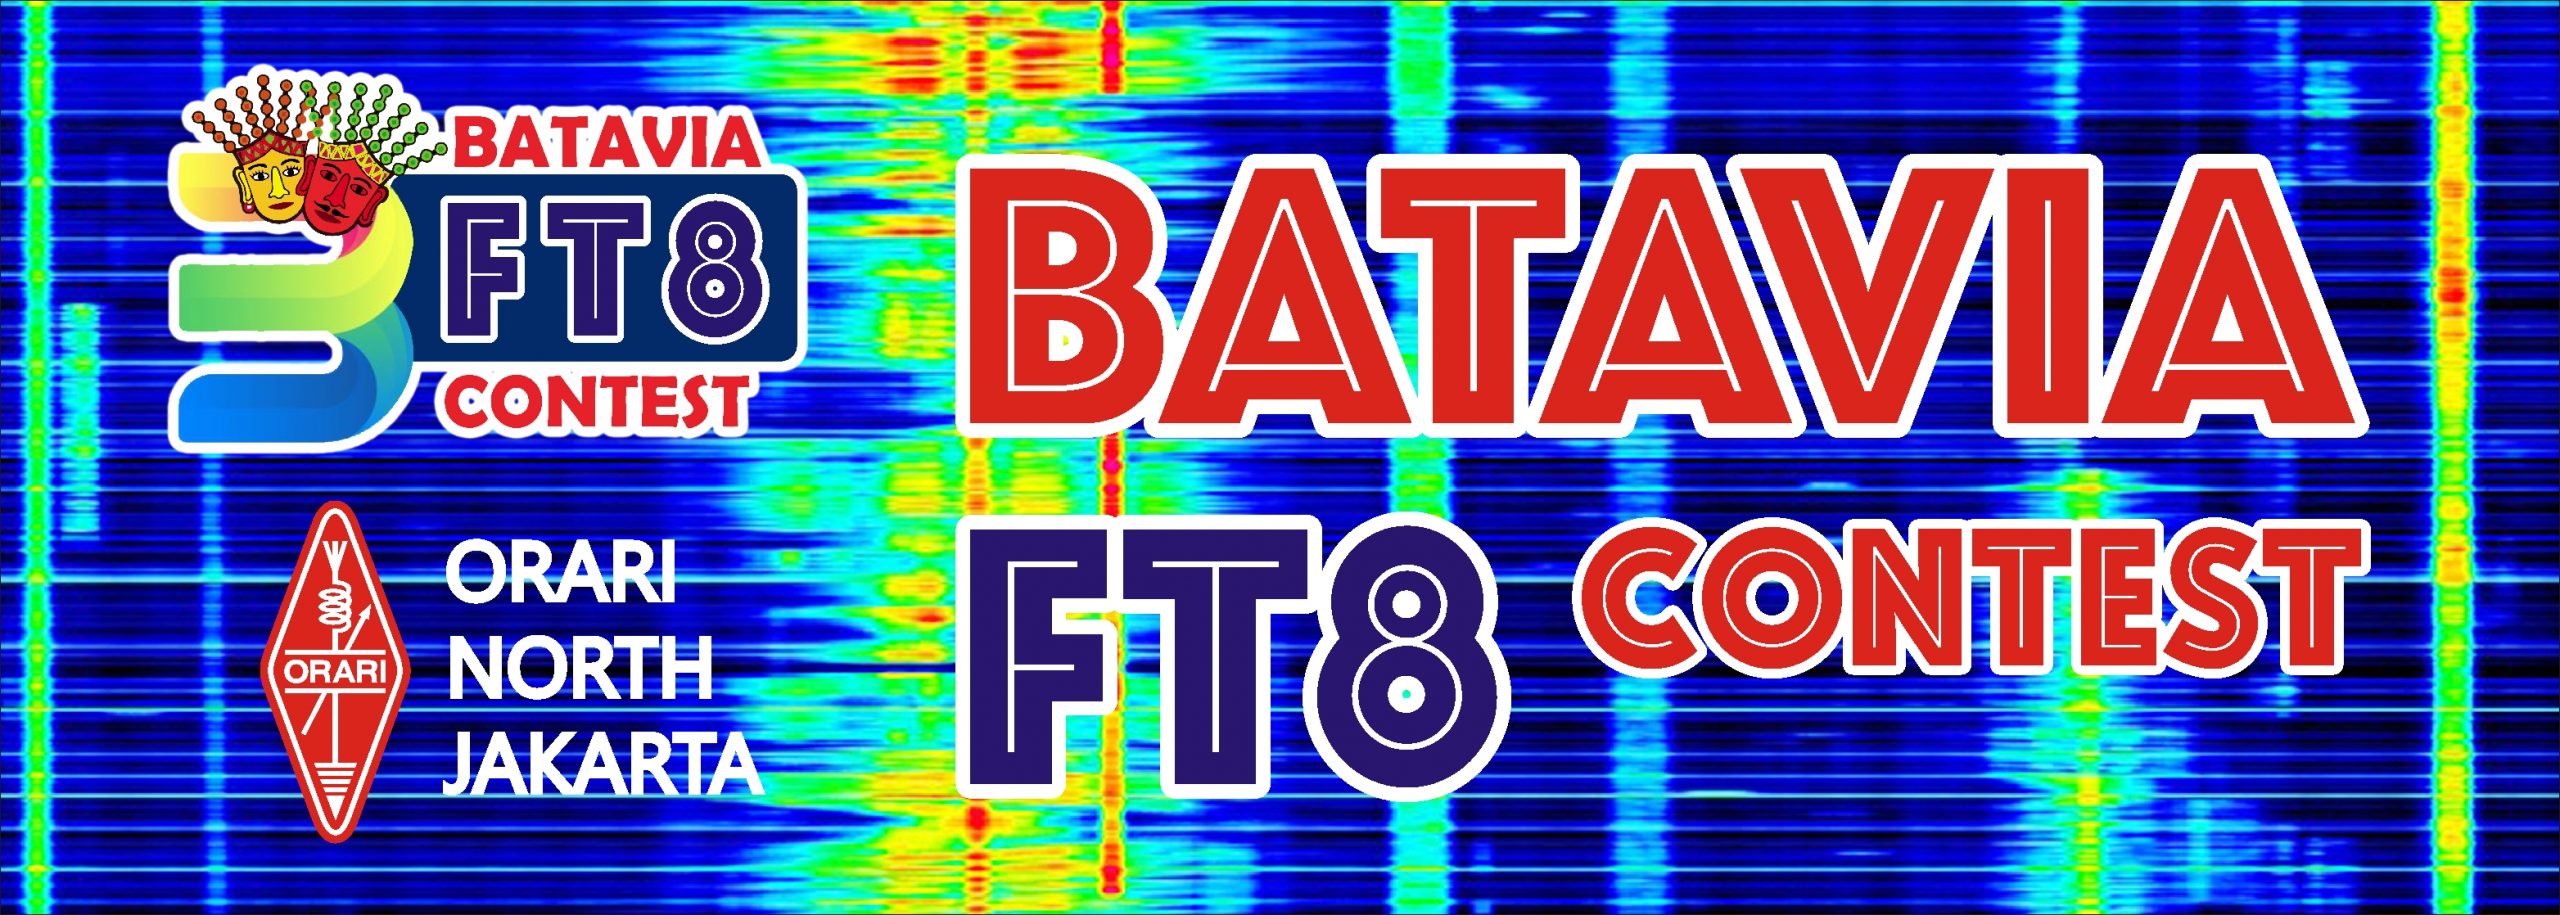 Batavia FT8 Contest